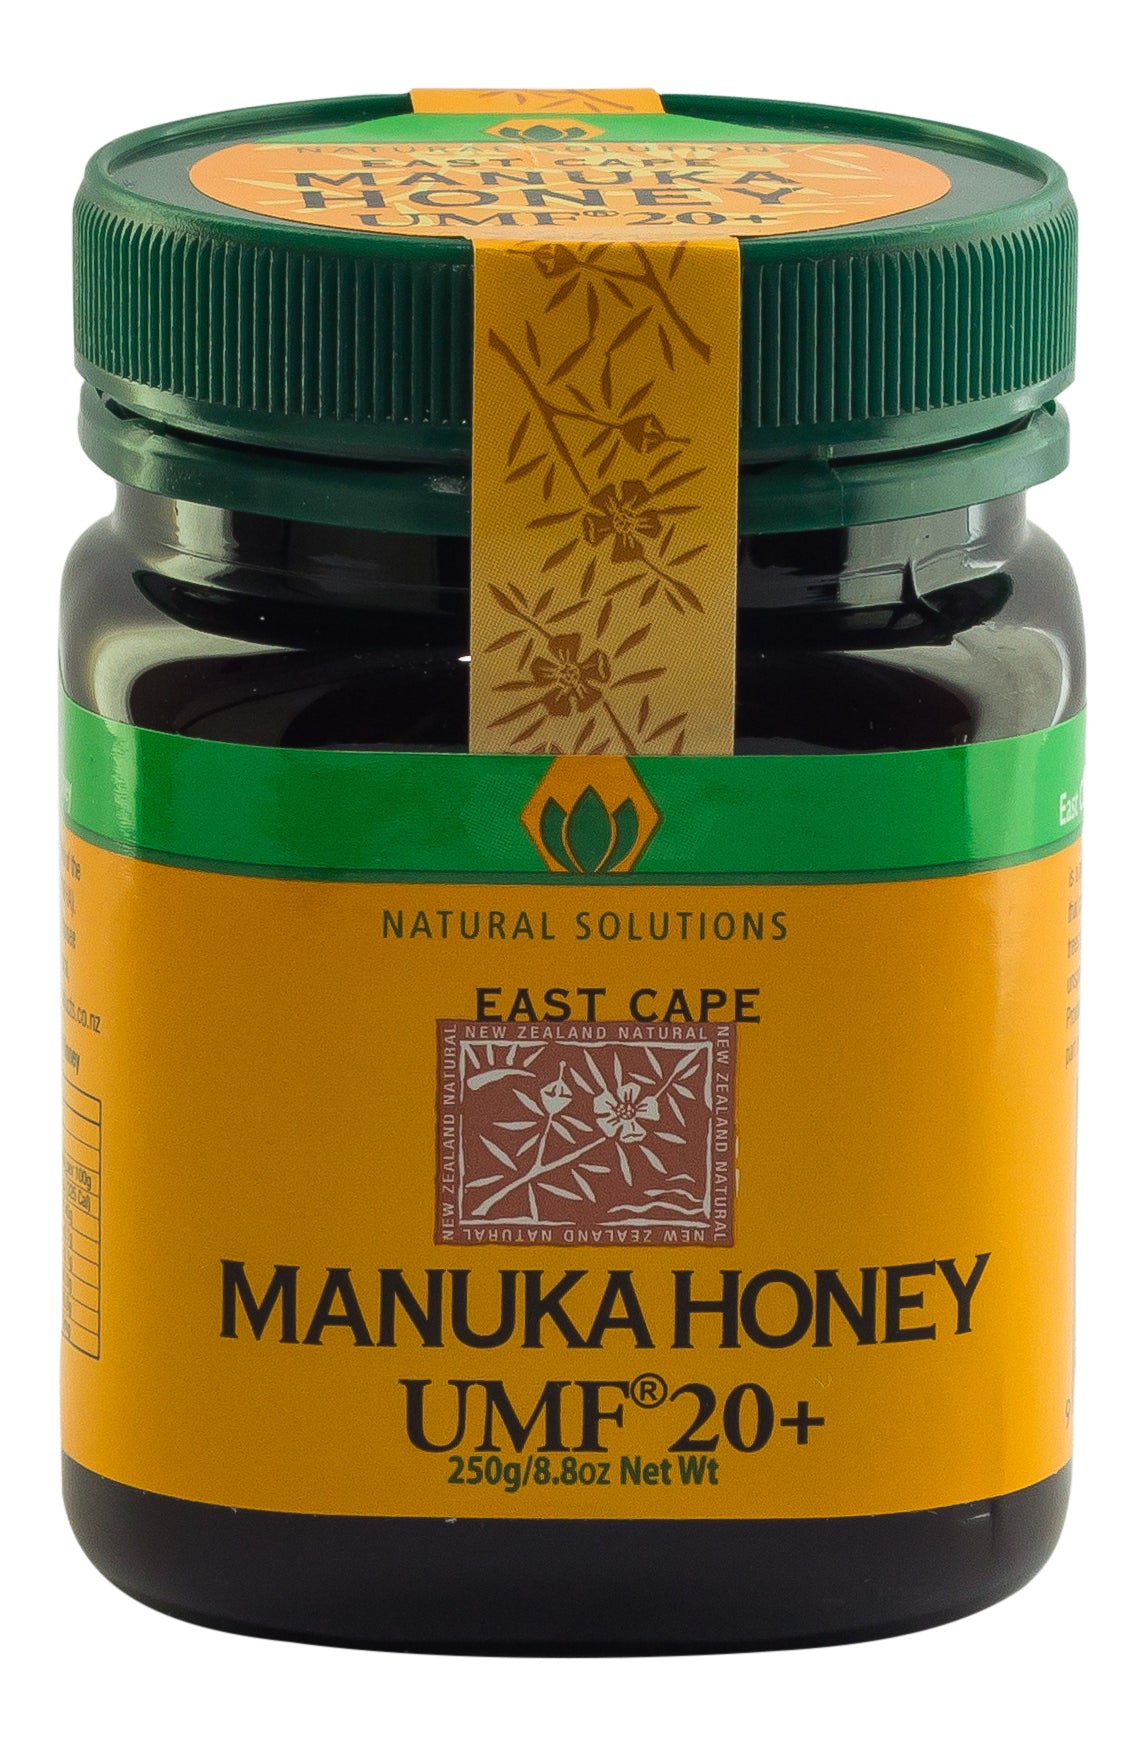 What makes Manuka UMF honey superior?